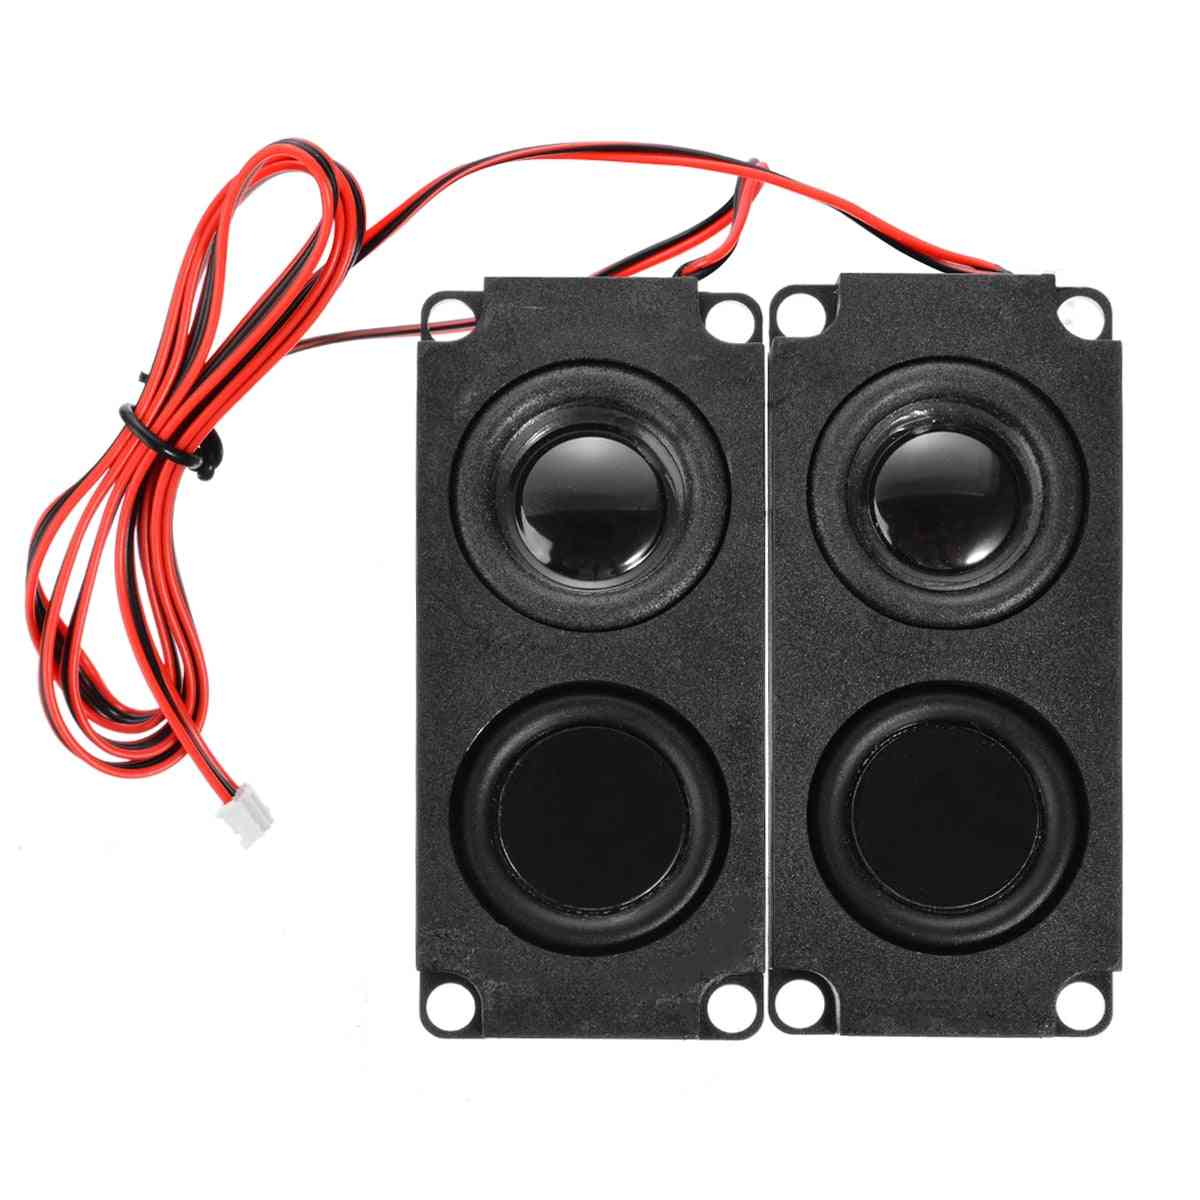 Audio Sound Box Loudspeaker, Stereo Subwoofer For Lcd Tv